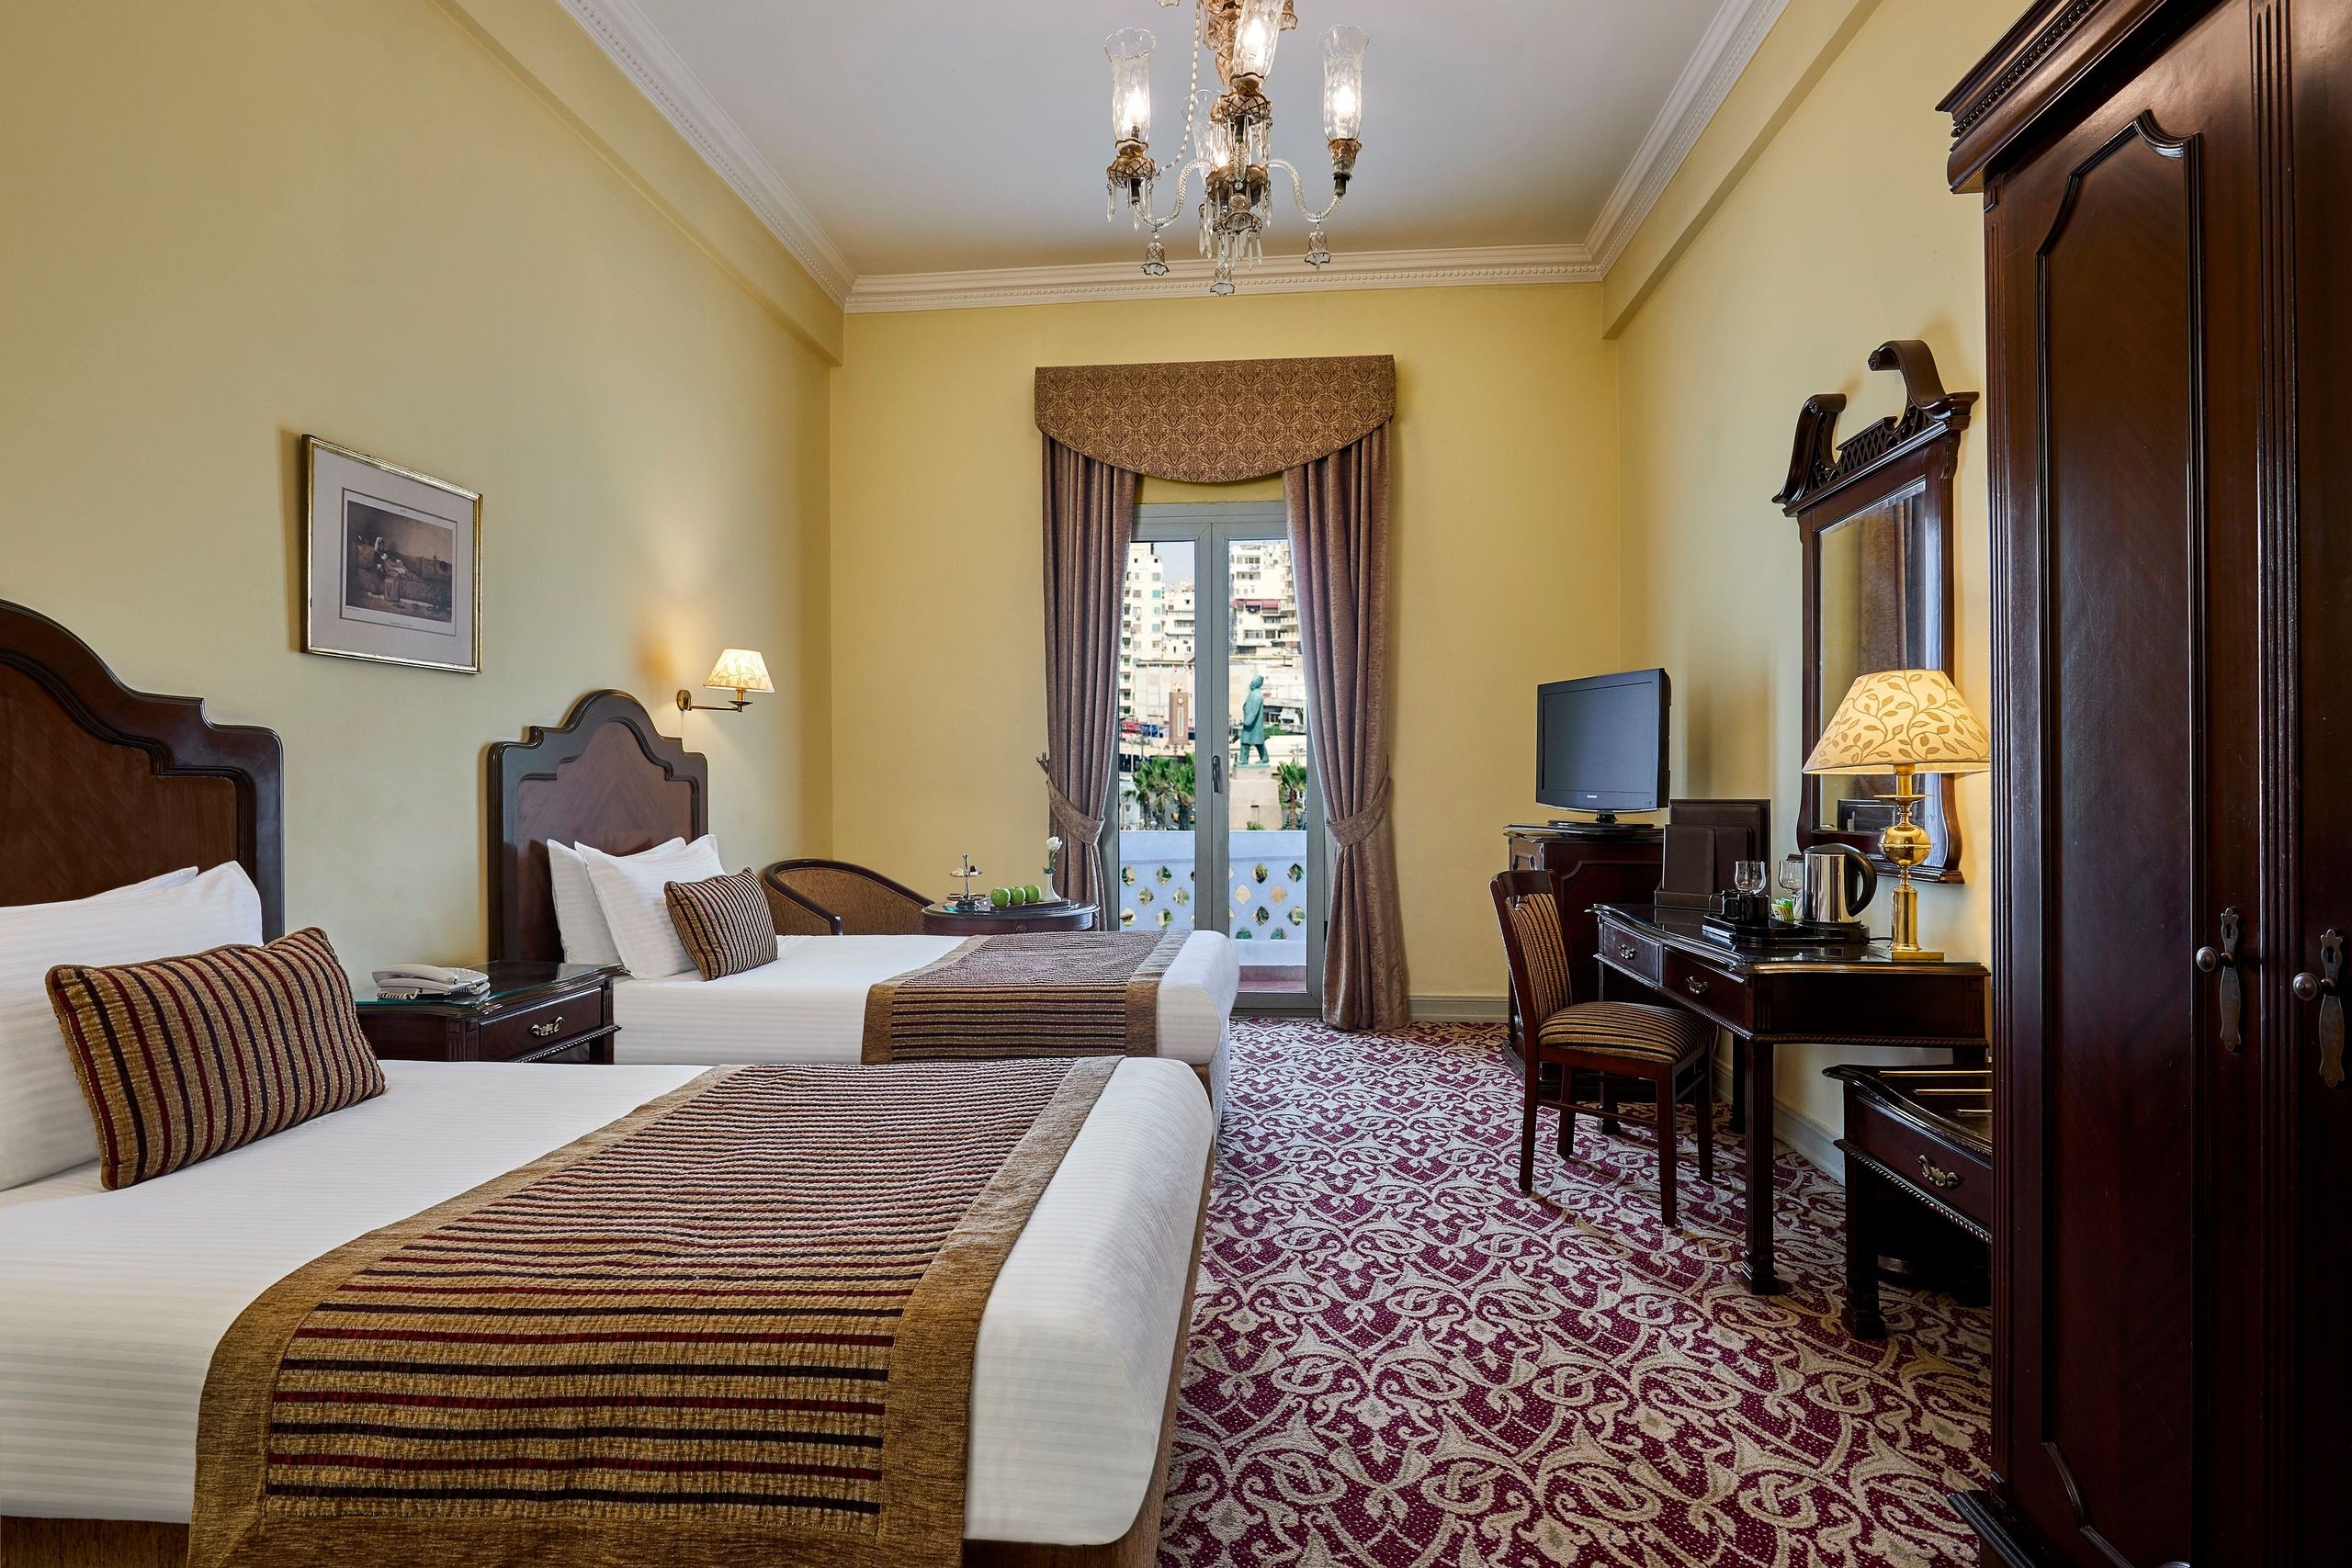 Steigenberger Cecil Hotel - Alexandria - Egypten - Deluxe-værelser